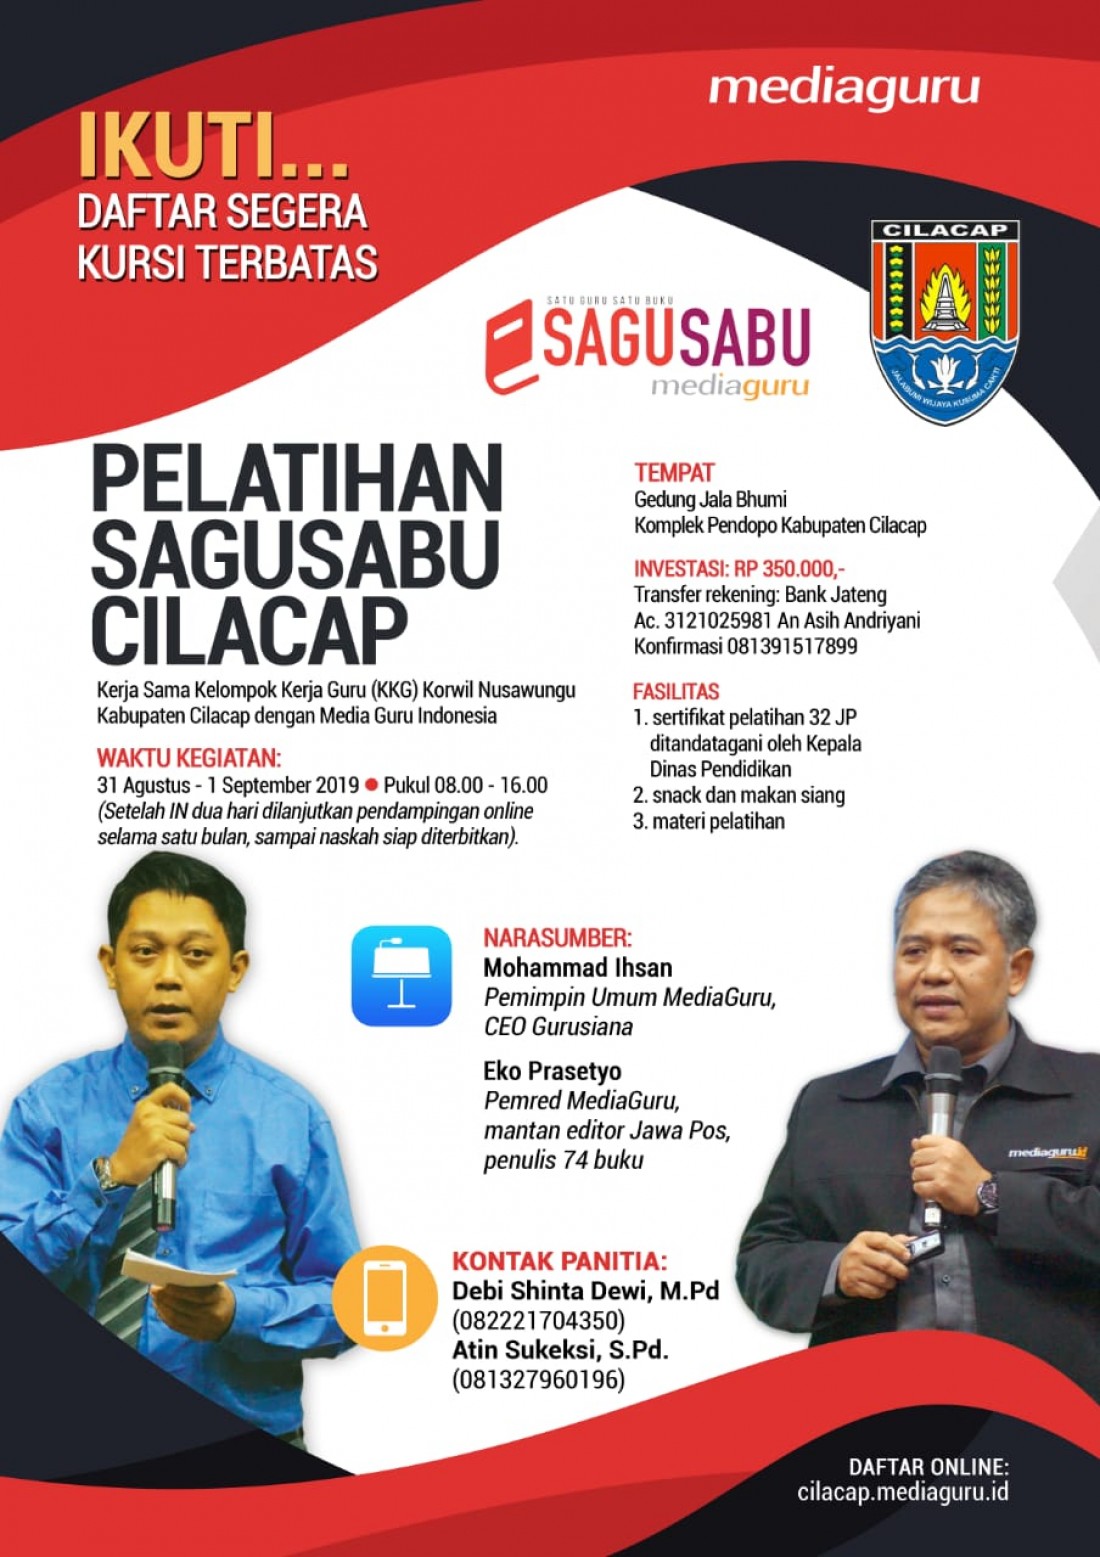 Pelatihan Sagusabu Cilacap (31 Agustus - 1 September 2019)